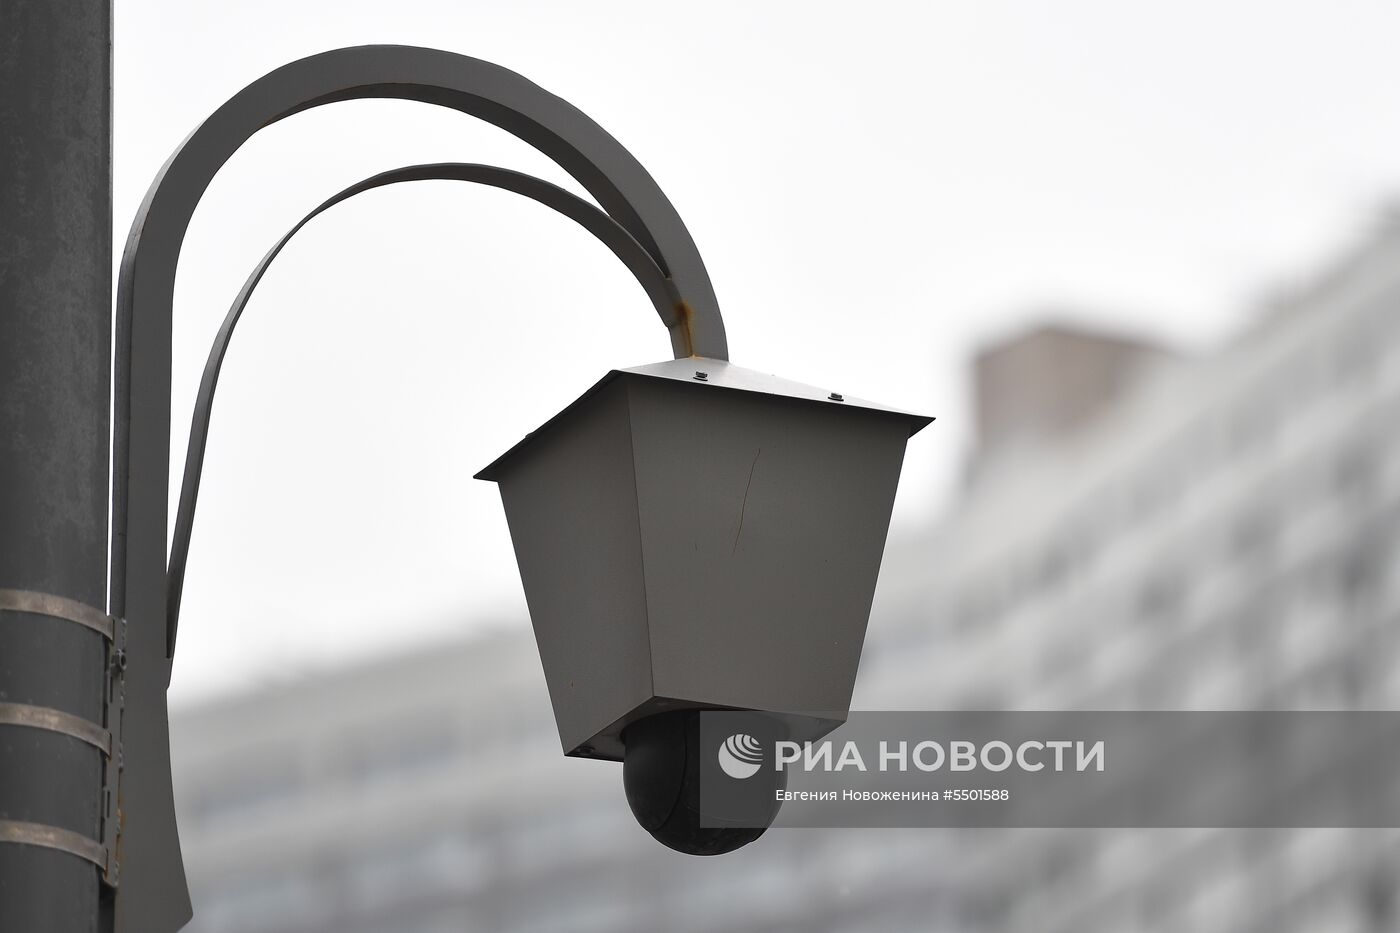 Камеры ГИБДД нового типа заработали в Москве